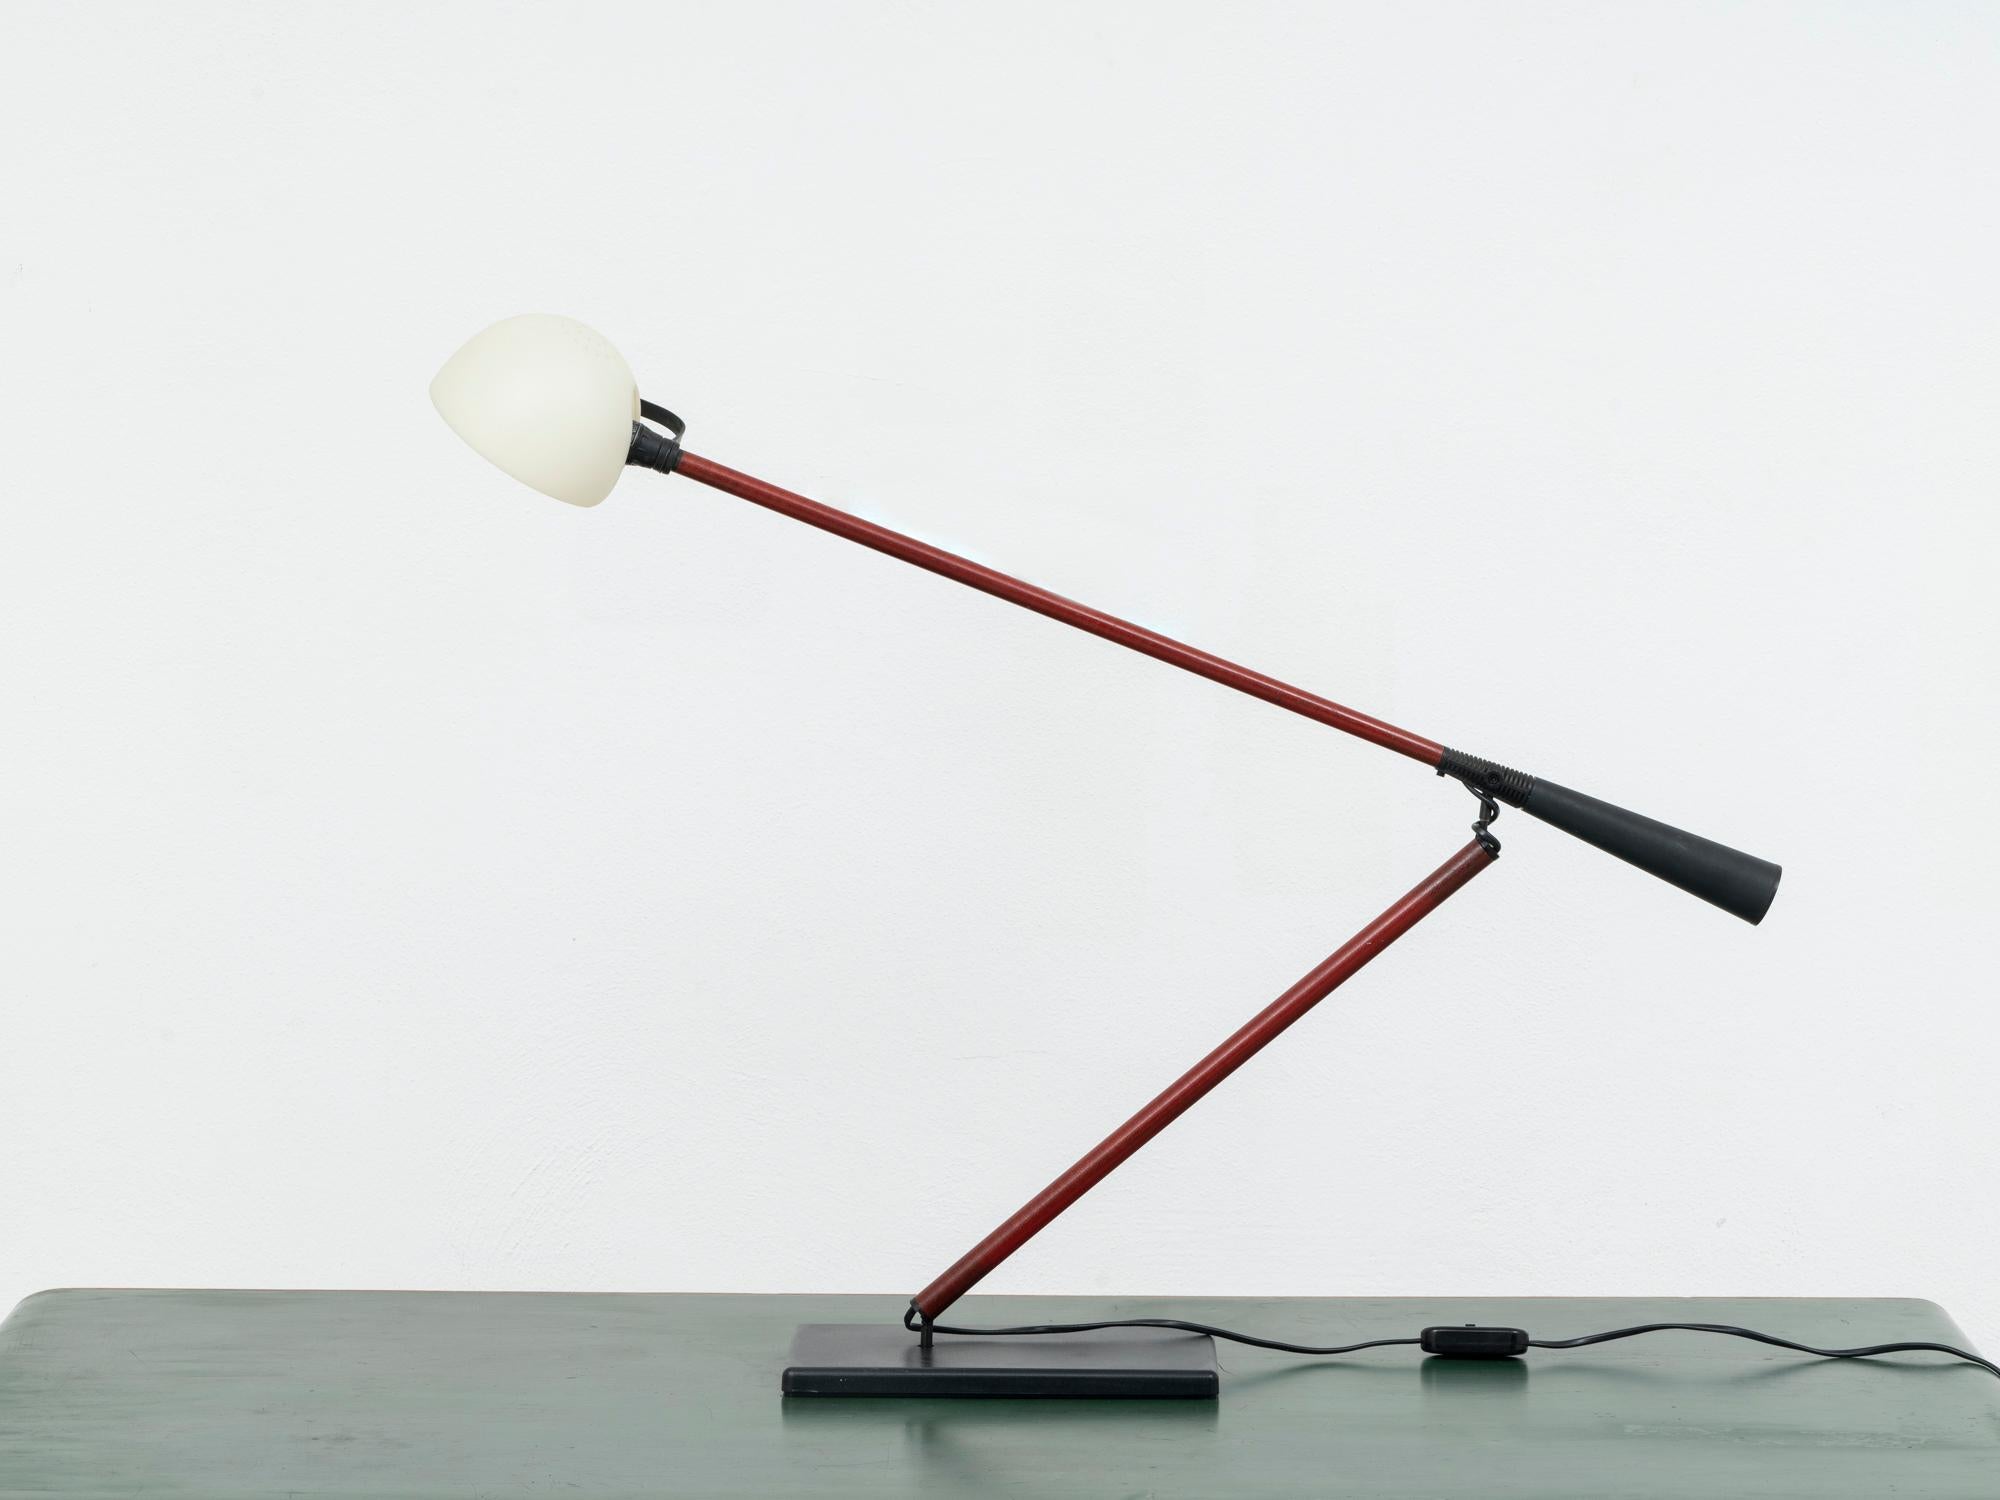 Cette lampe a été conçue par l'architecte et designer italien Paolo Rizzatto en 1975, et constituait son deuxième projet, la version de table de l'applique 265. Cette lampe a été conçue pour couvrir toute la surface d'un bureau et pour être